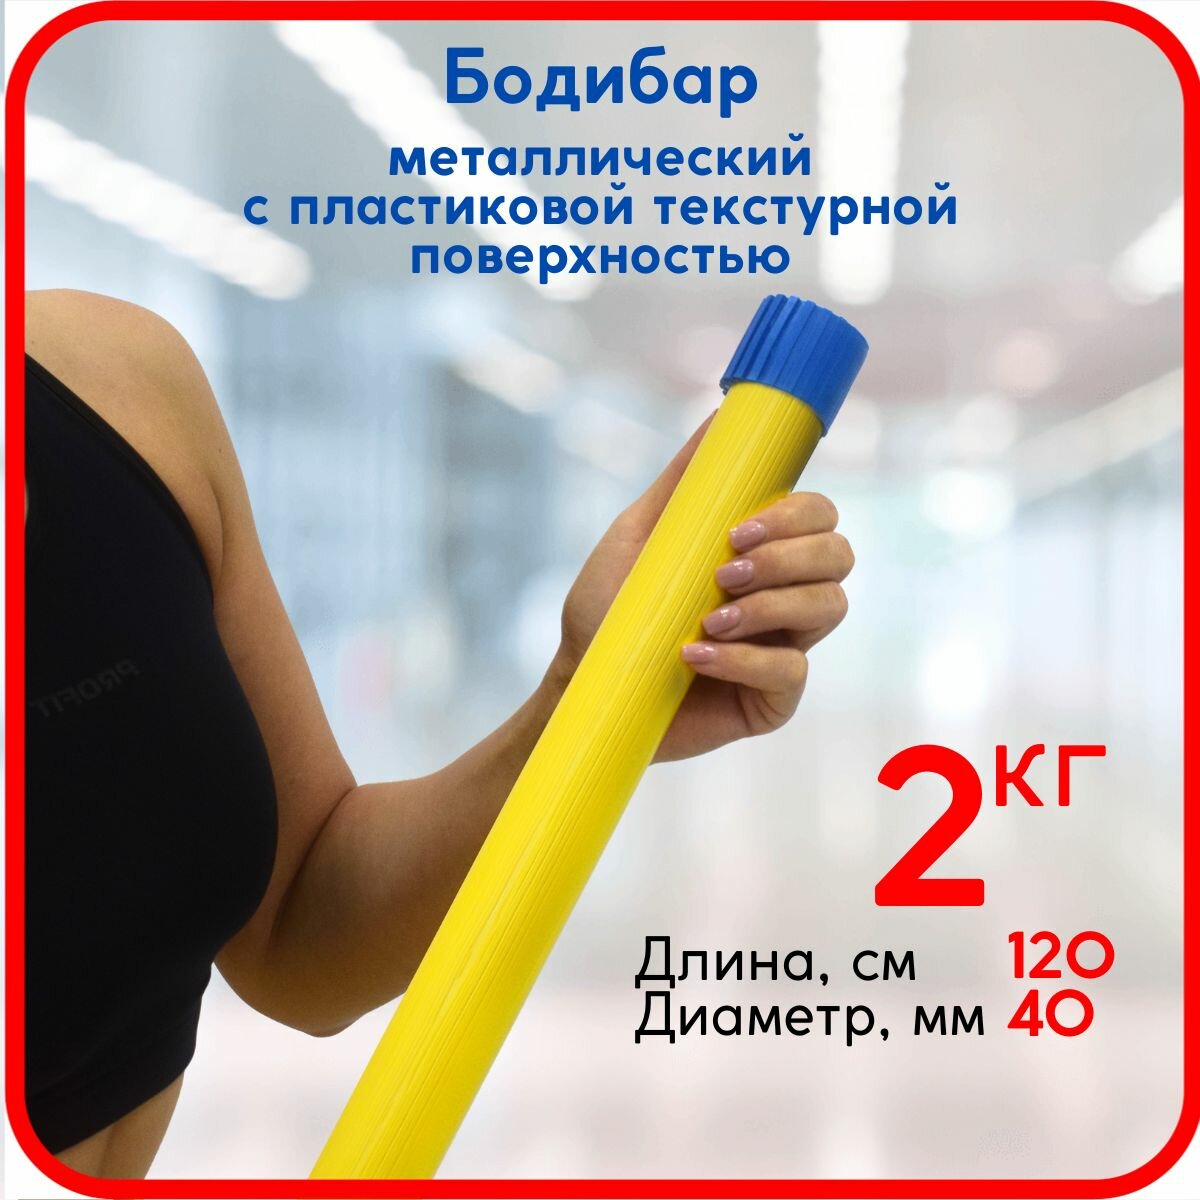 Бодибар, гимнастическая палка Leco 2 кг с пластиковым покрытием